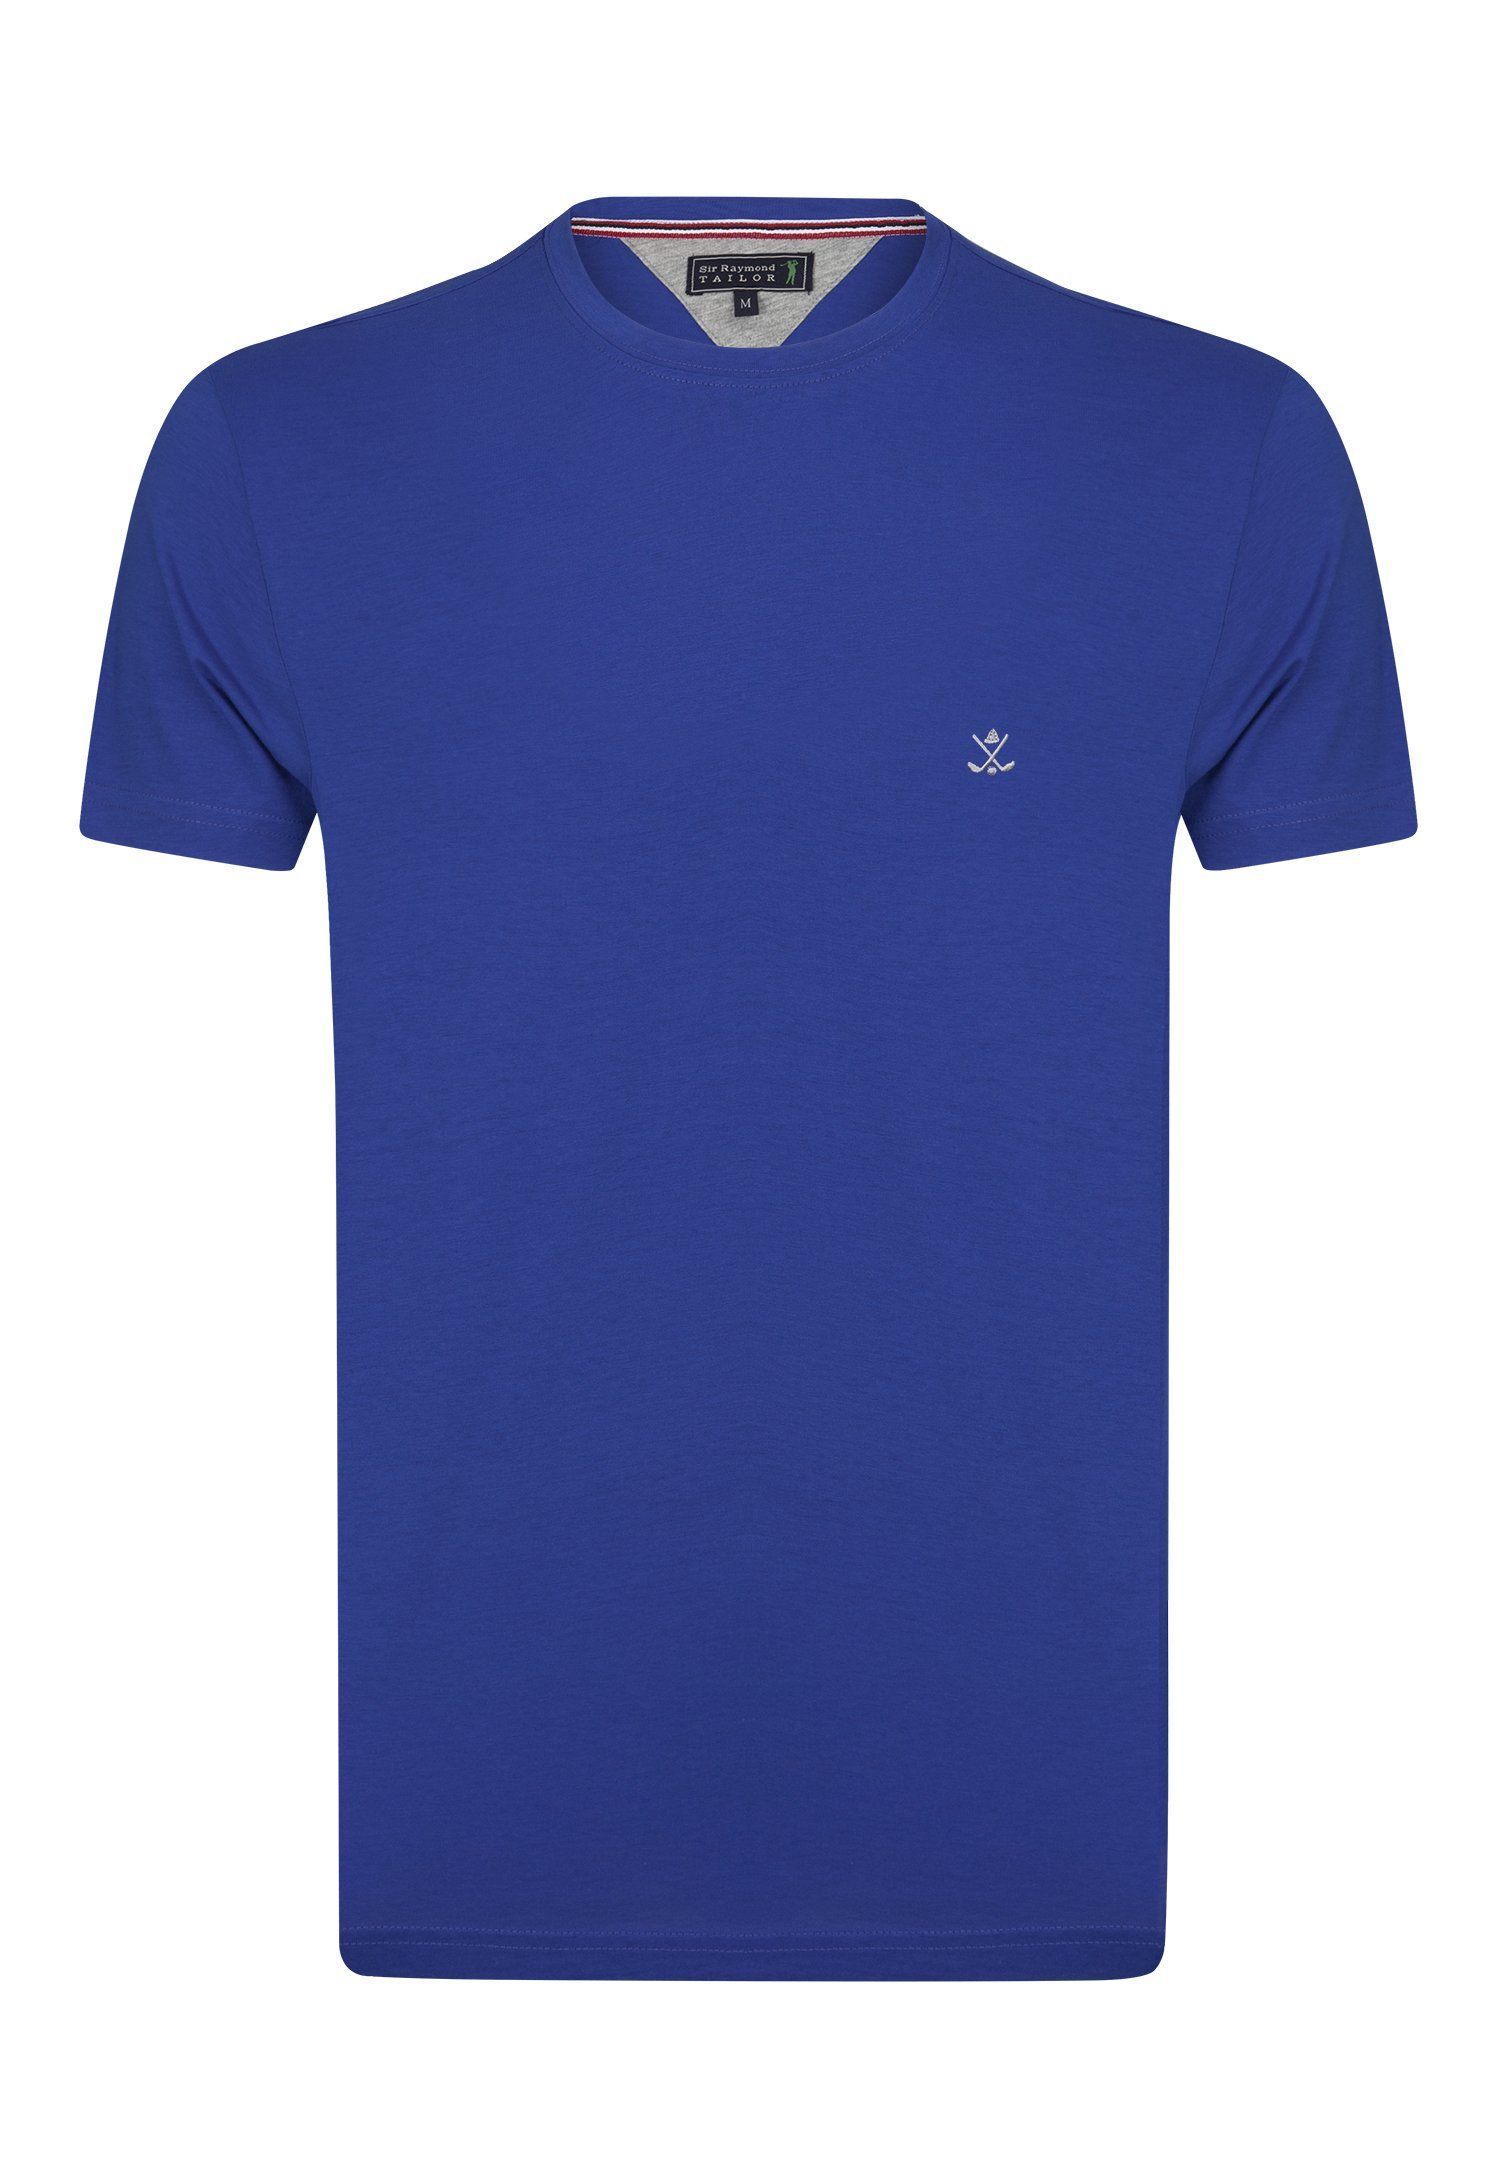 Jaime Royal Sir Tailor Blue Raymond T-Shirt